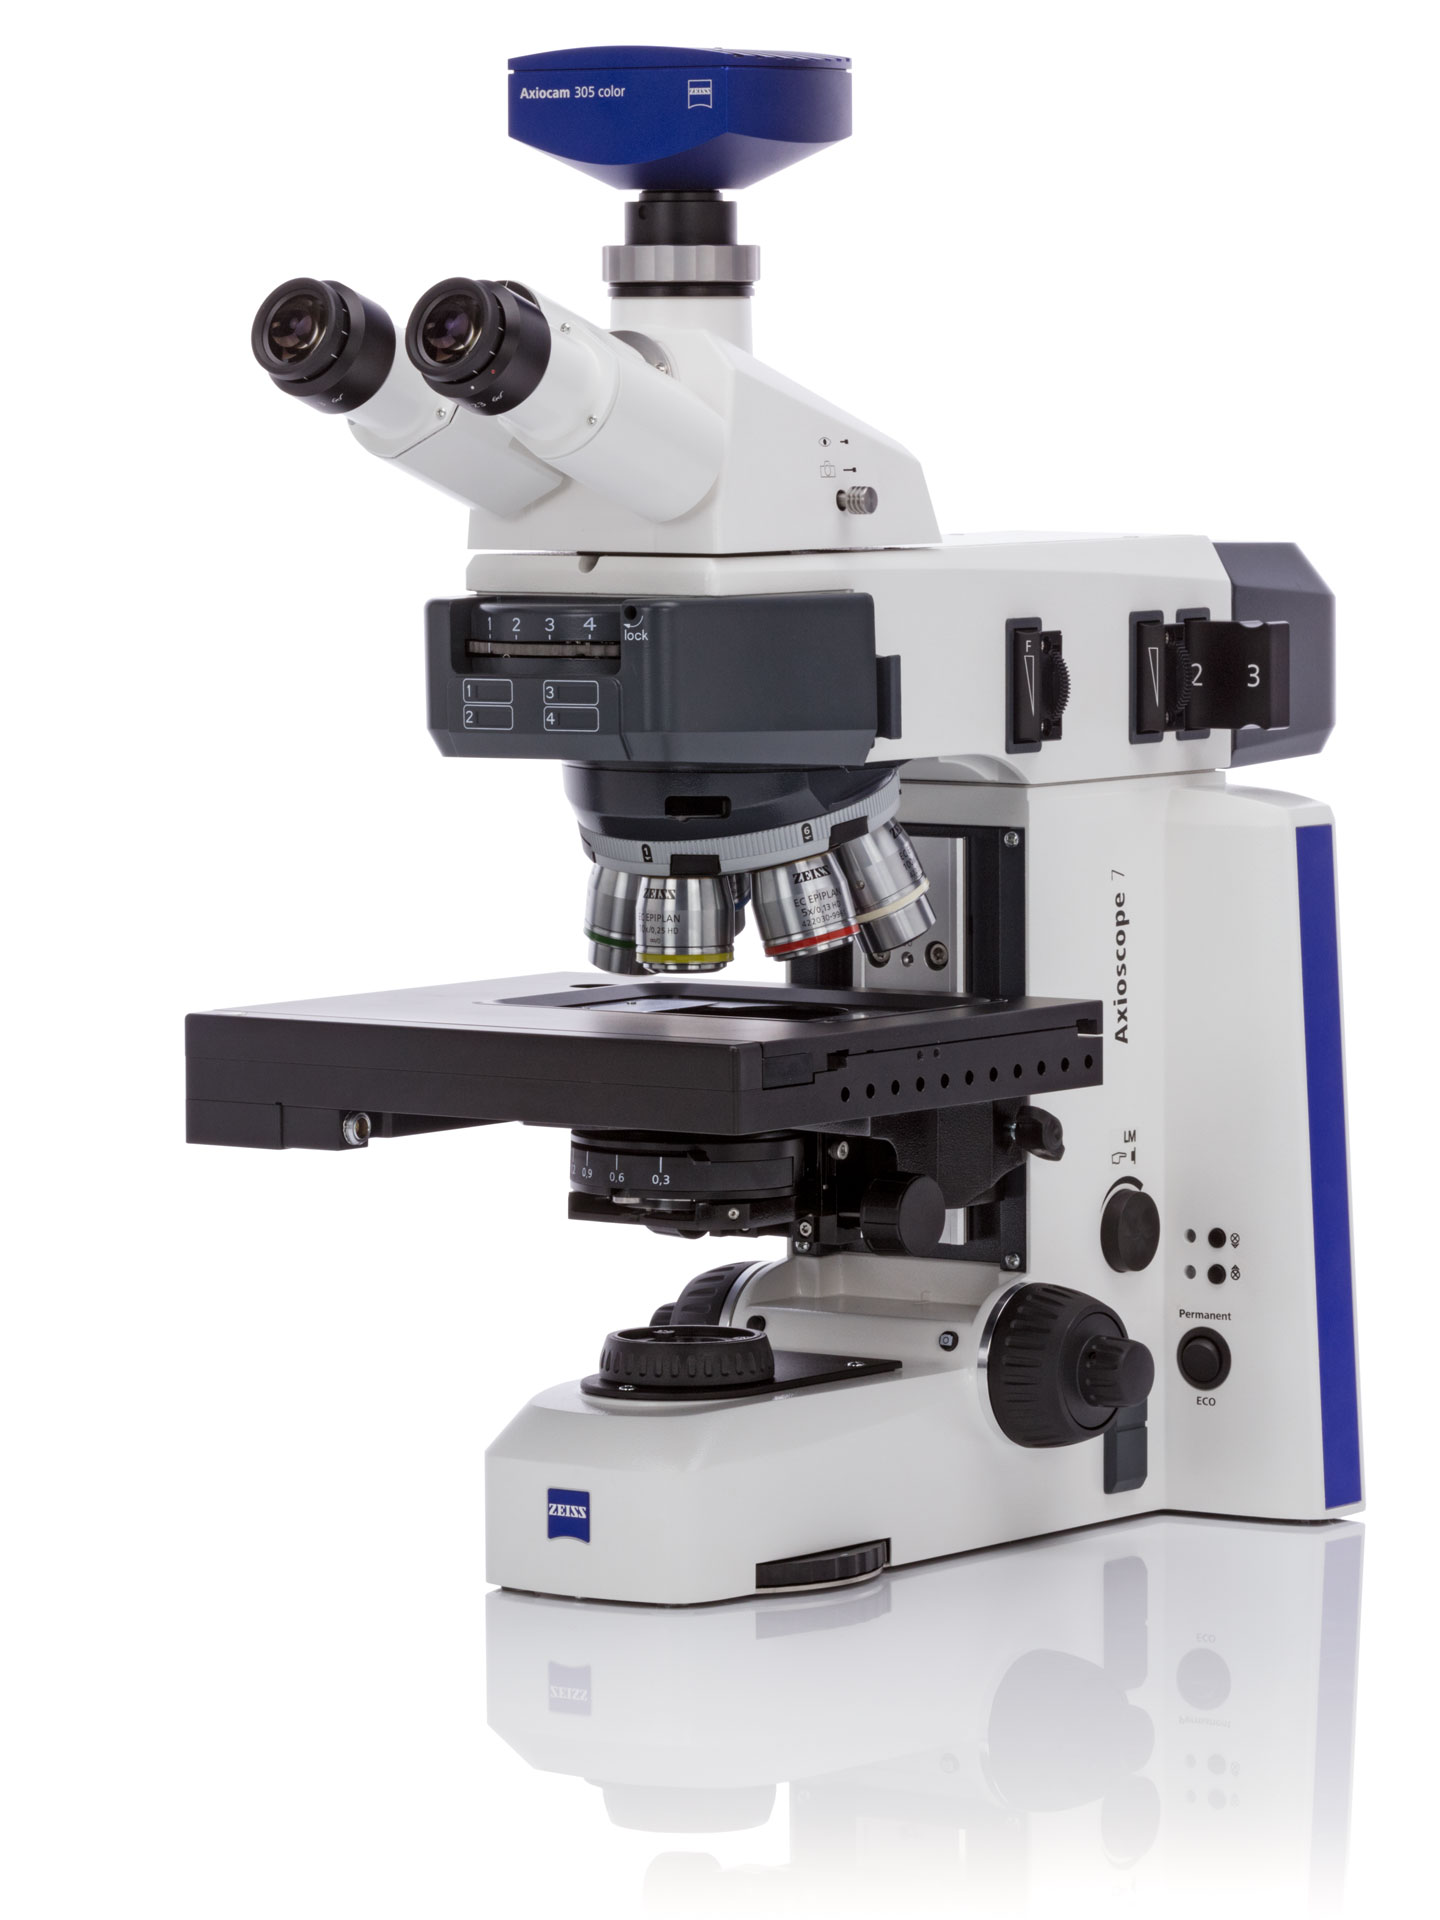 倒置显微镜 Laite莱特LB20 细胞培养观察相差倒置生物显微镜